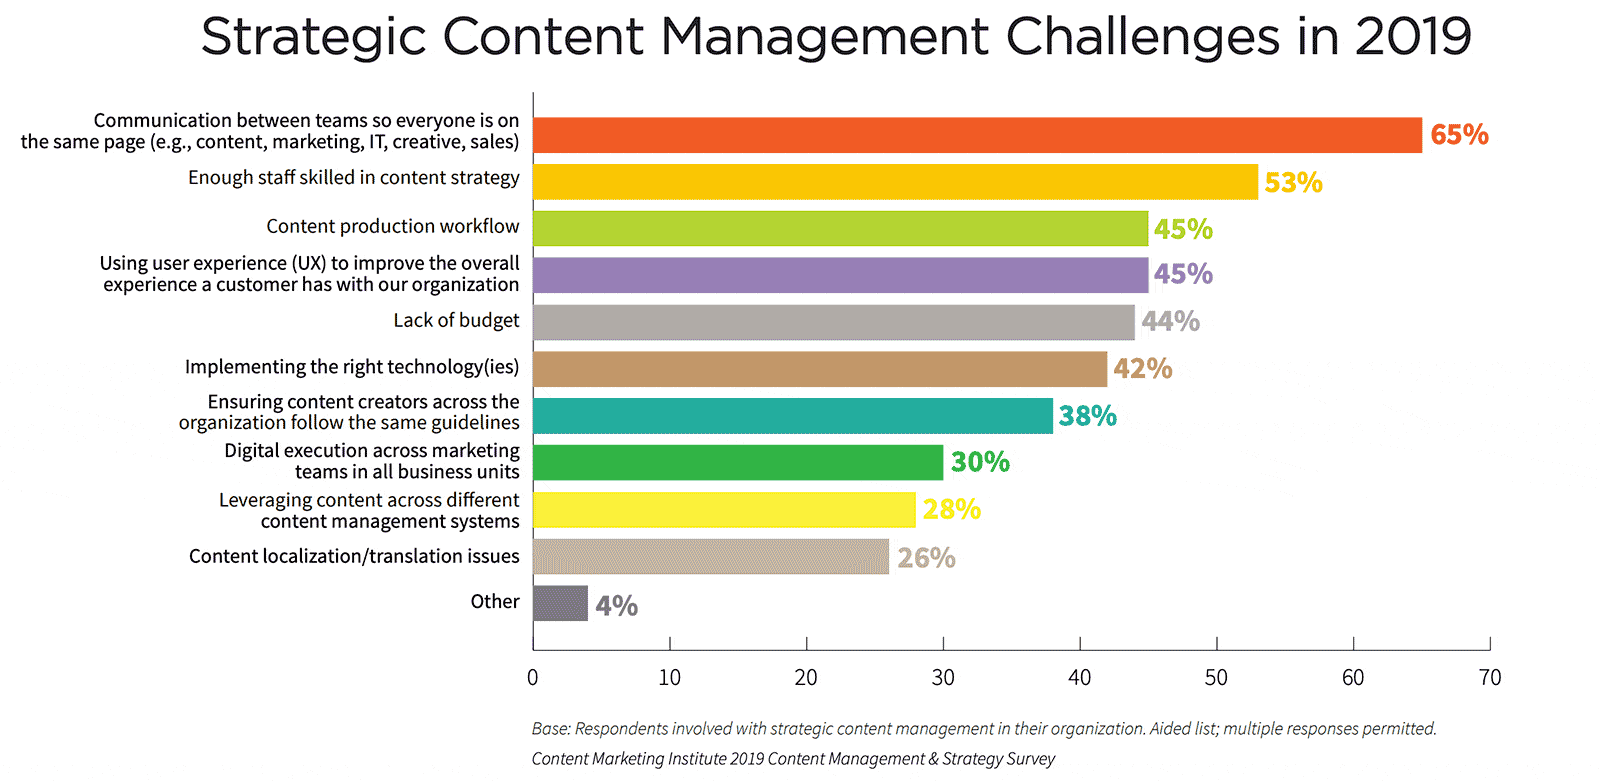  topp content management utfordringer